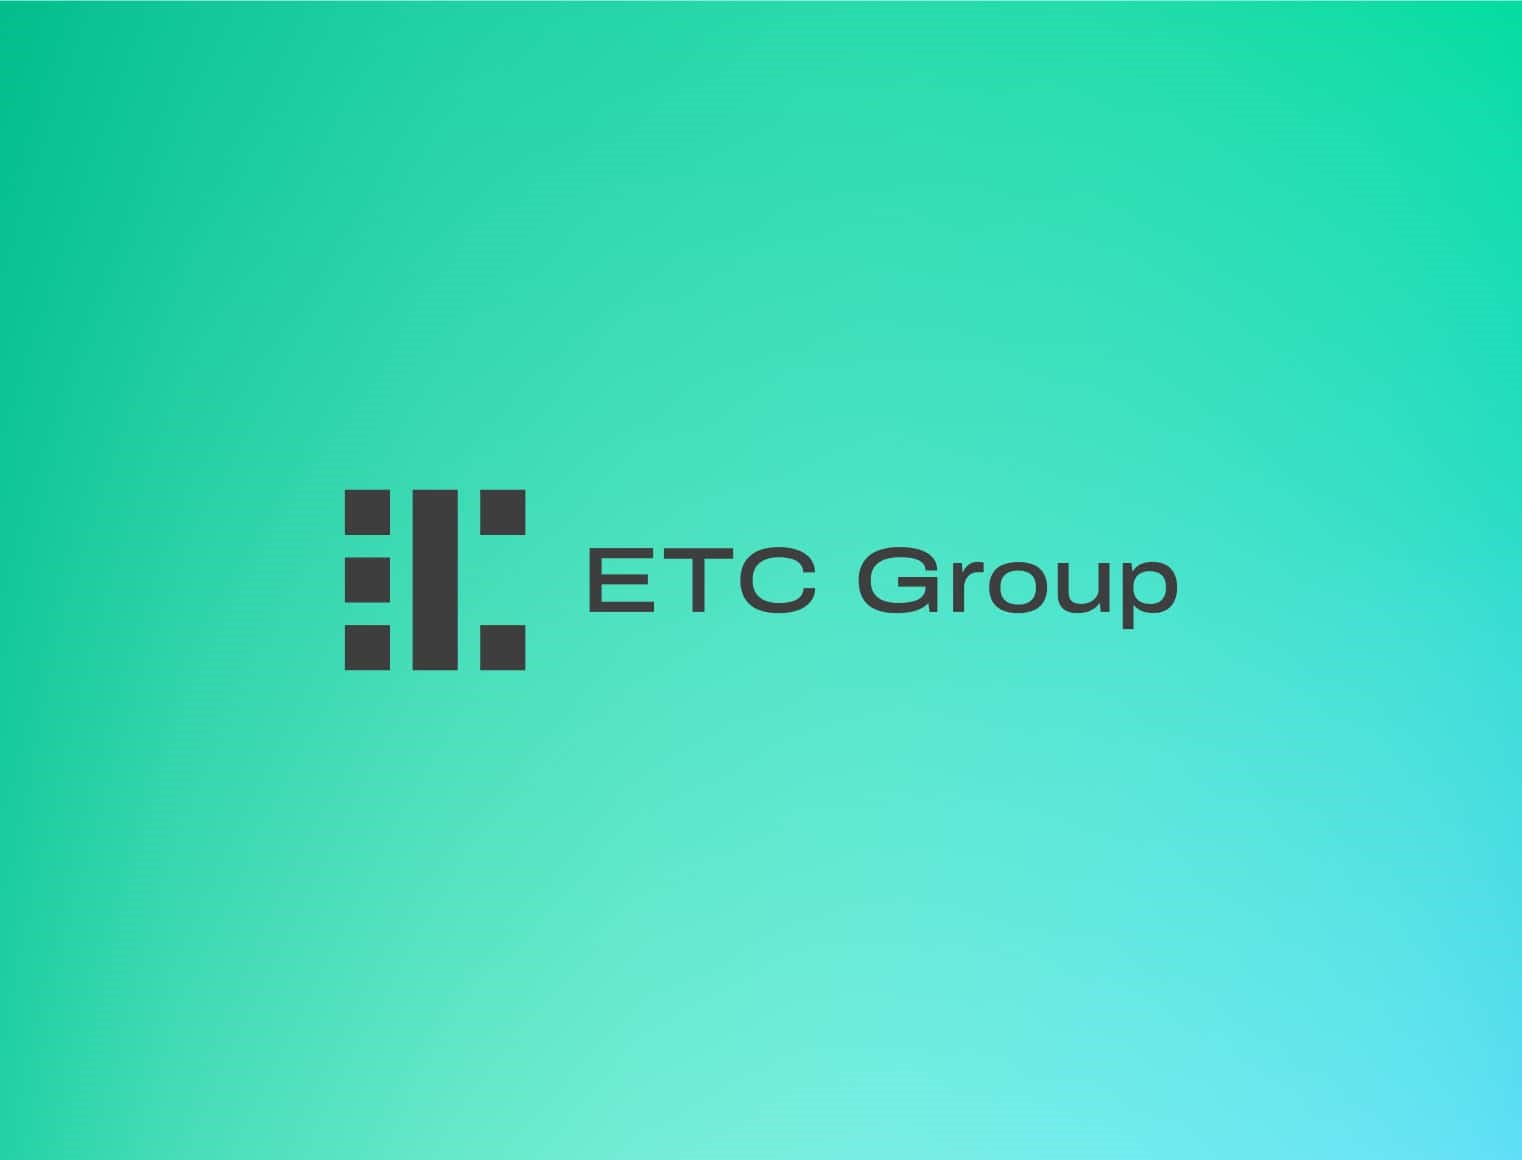 ETC Groups VD Tim Bevan delar insikter om den nuvarande Bitcoin-marknadsdynamiken och effekterna av ETFer i USA med Proactives Stephen Gunnion. Han kommenterar om varför Ethereum kan bli nästa stora grej.